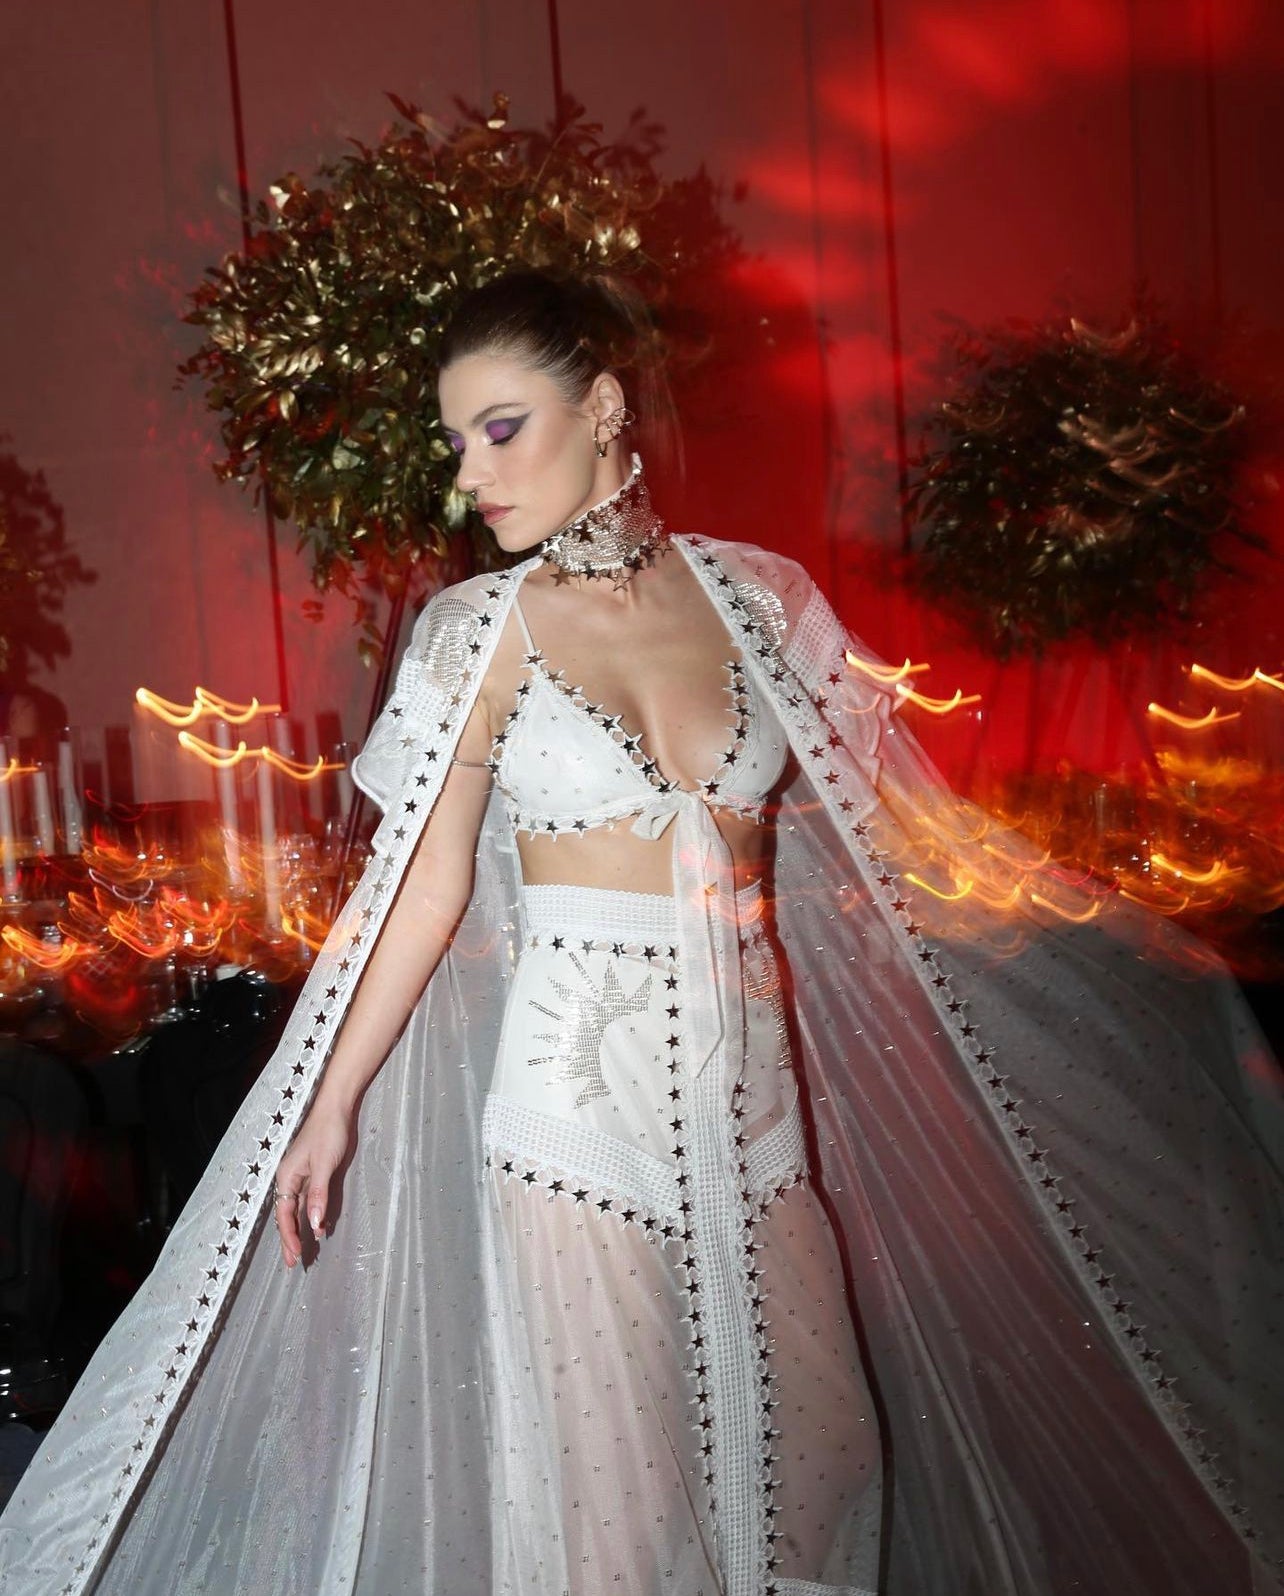 Yüşra Geyik wearing a total look from Zeynep Tosun Couture